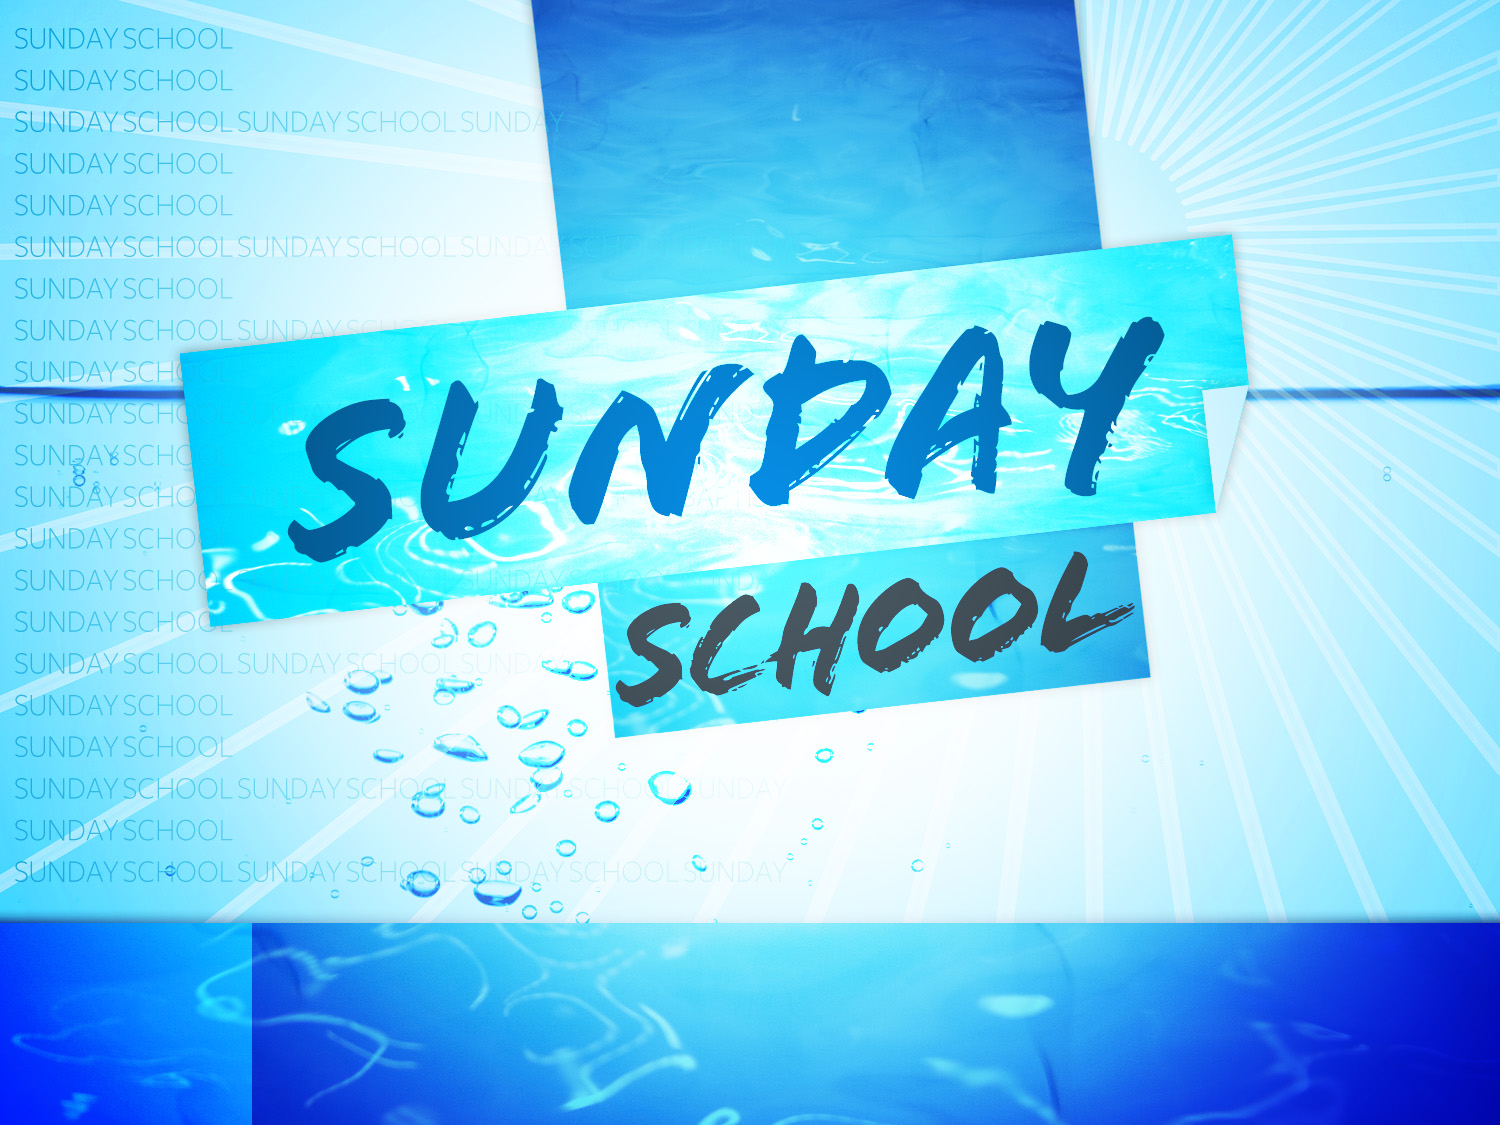 Sunday School Paths Chapel NY 237 2720